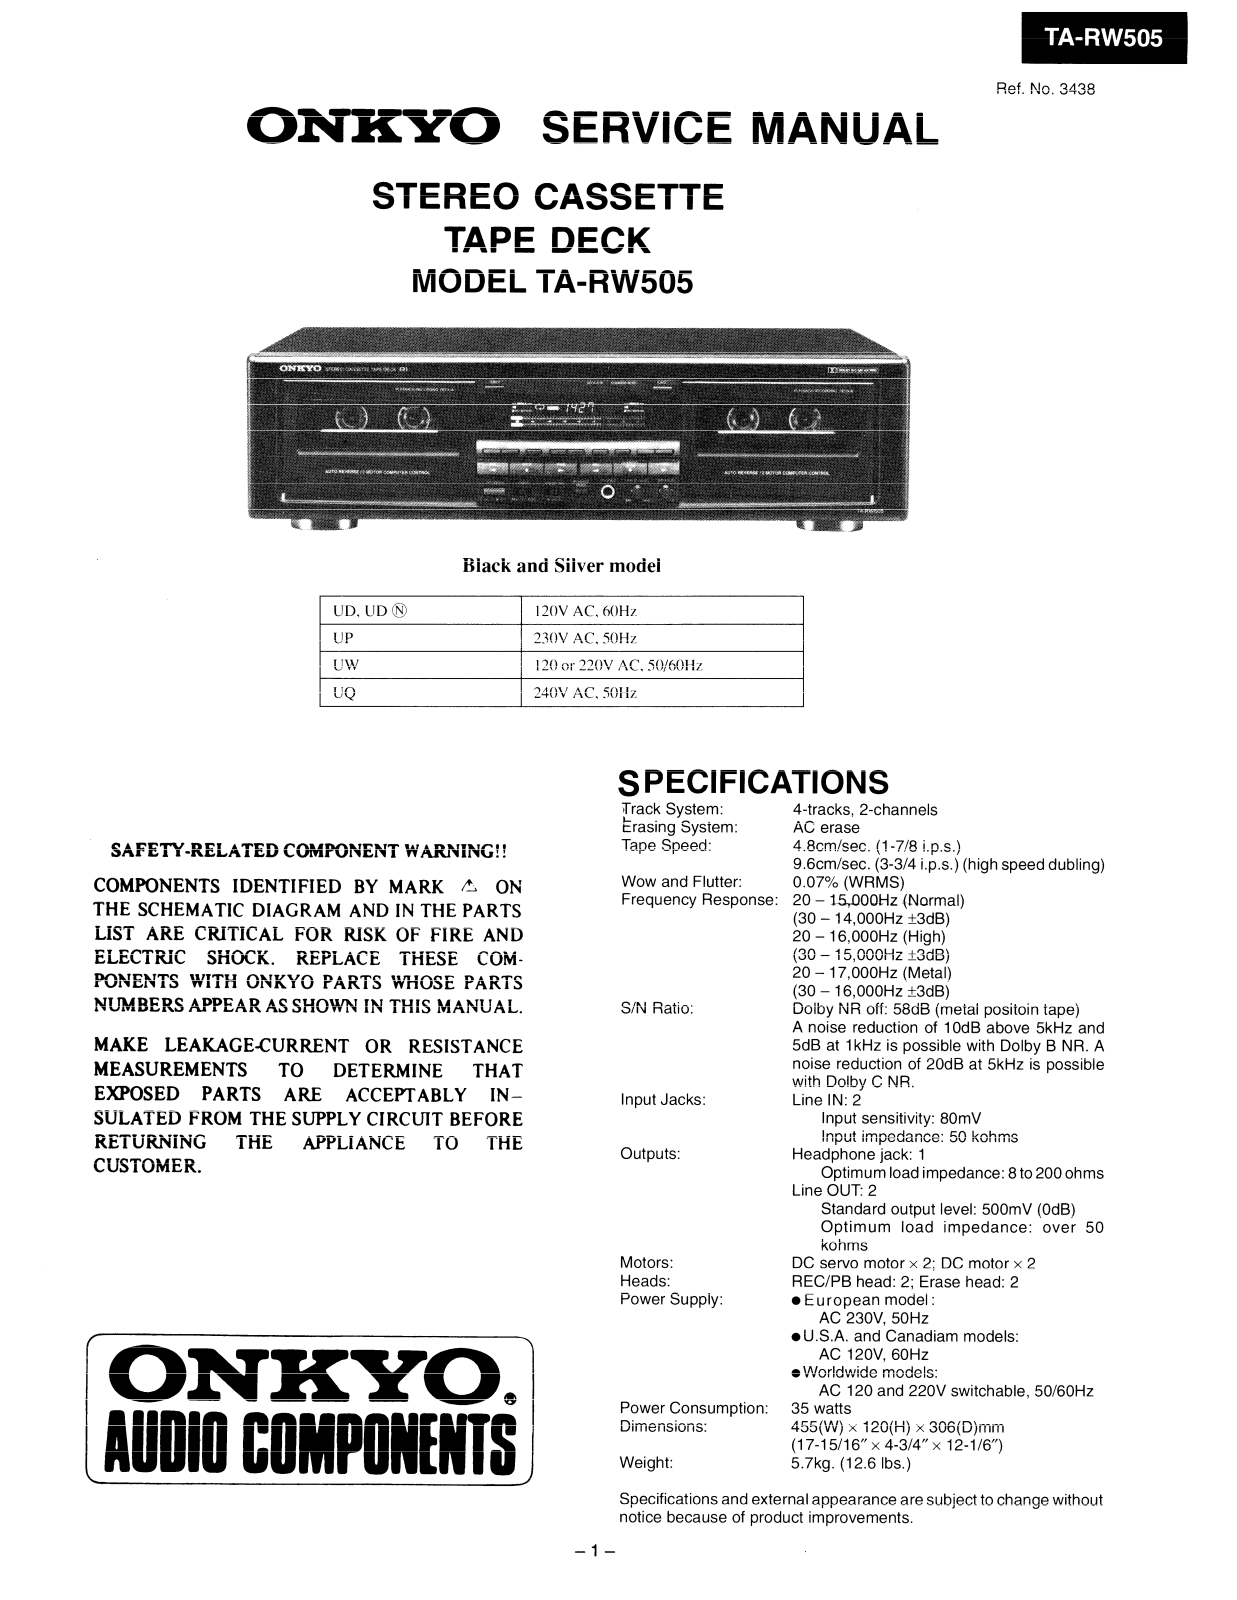 Onkyo TARW-505 Service manual